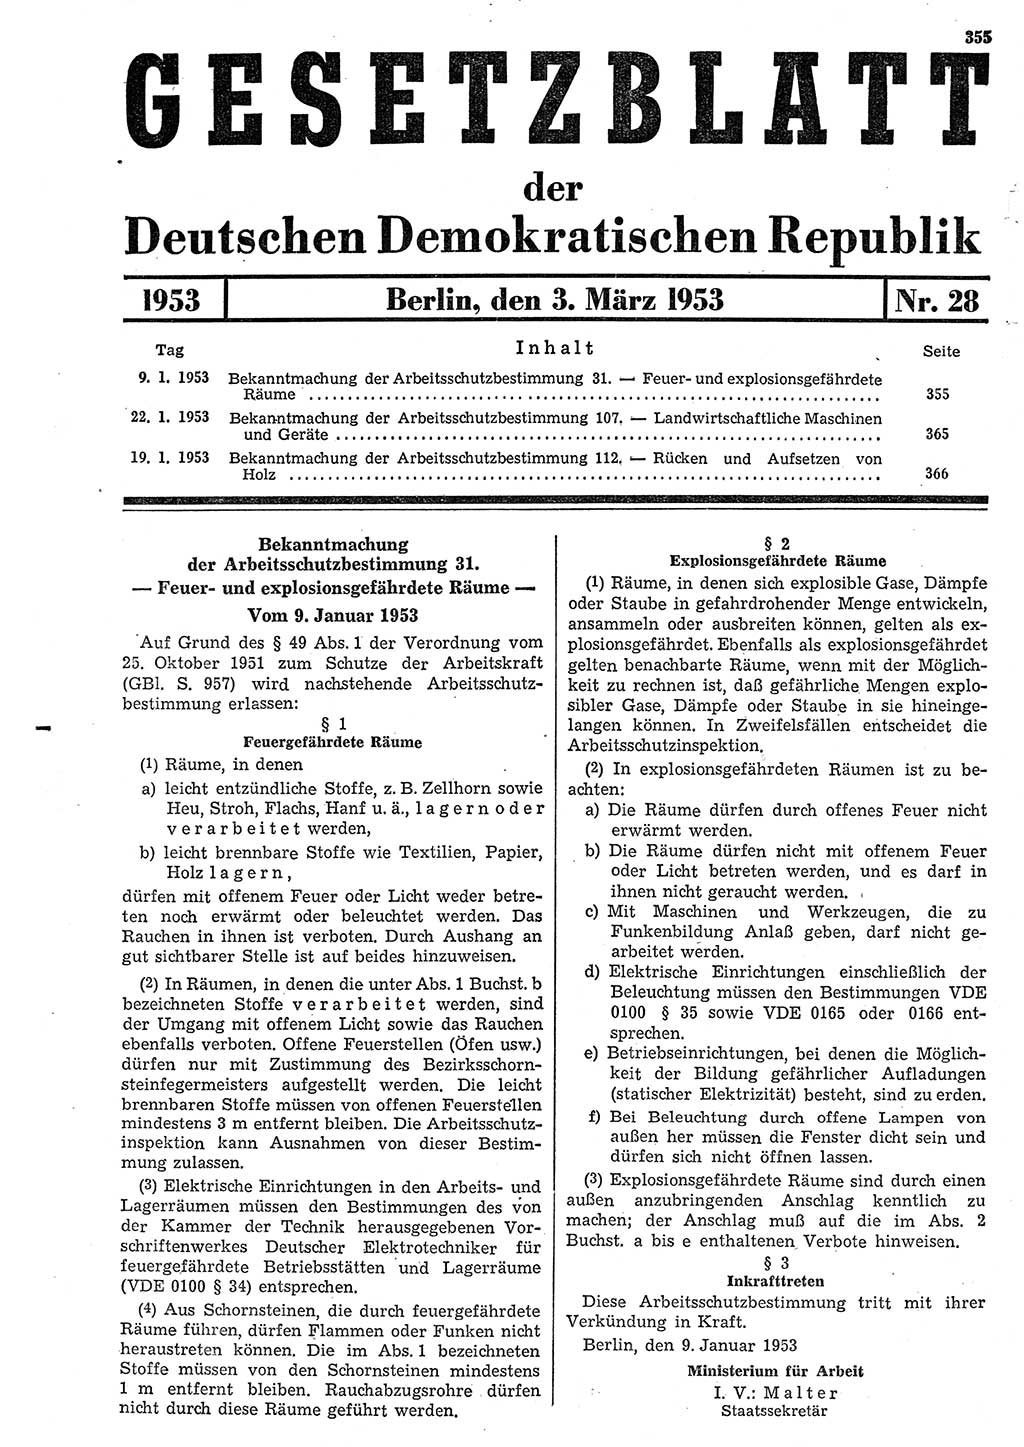 Gesetzblatt (GBl.) der Deutschen Demokratischen Republik (DDR) 1953, Seite 355 (GBl. DDR 1953, S. 355)